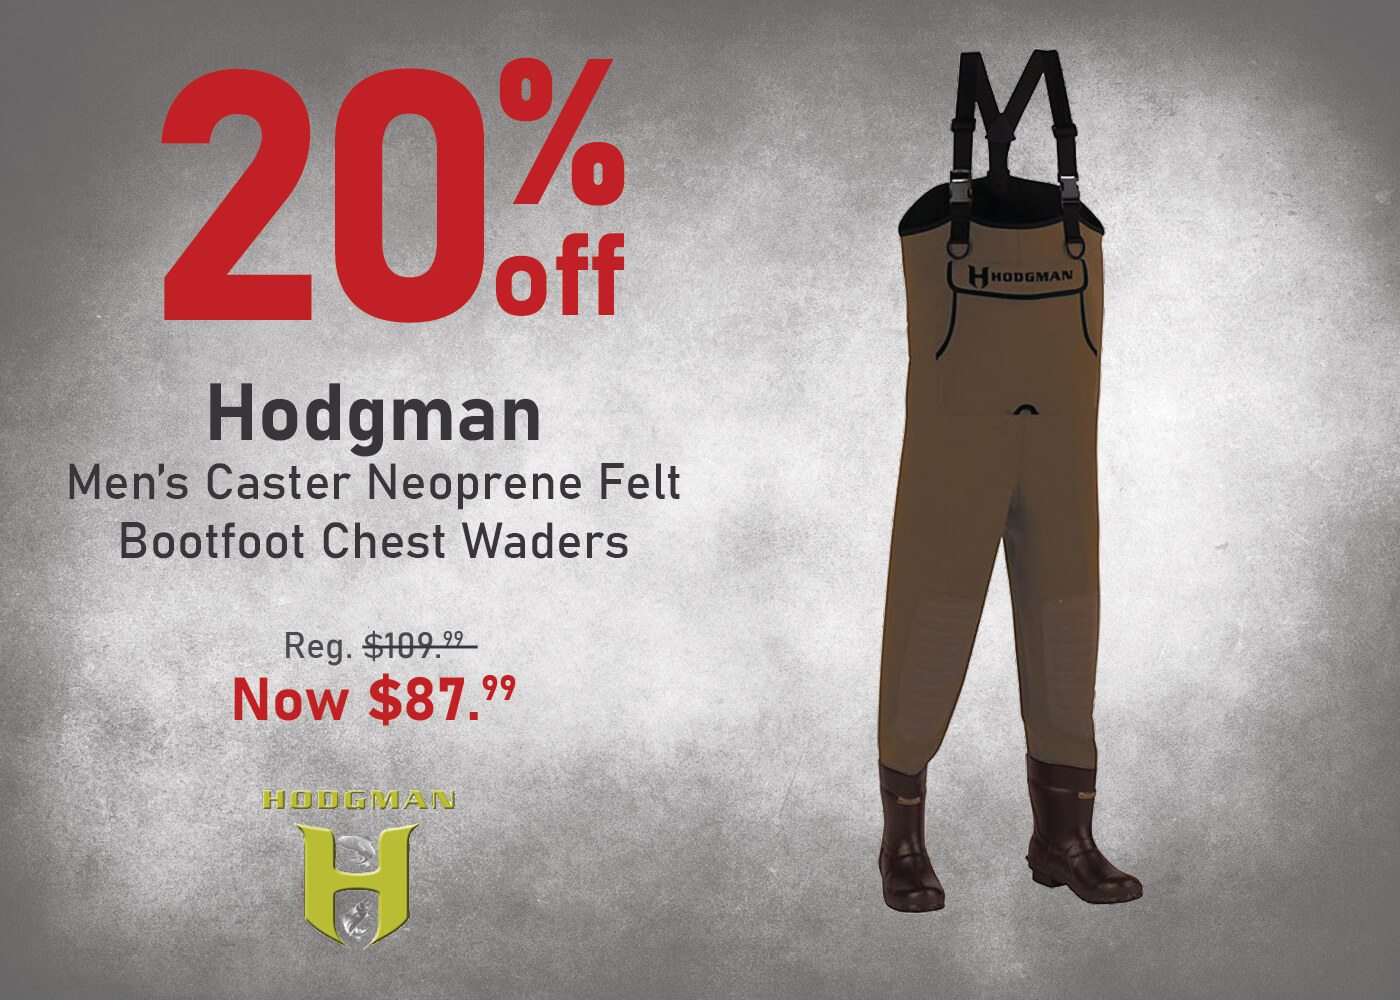 Save 20% on the Hodgman Men's Caster Neoprene Felt Bootfoot Chest Waders